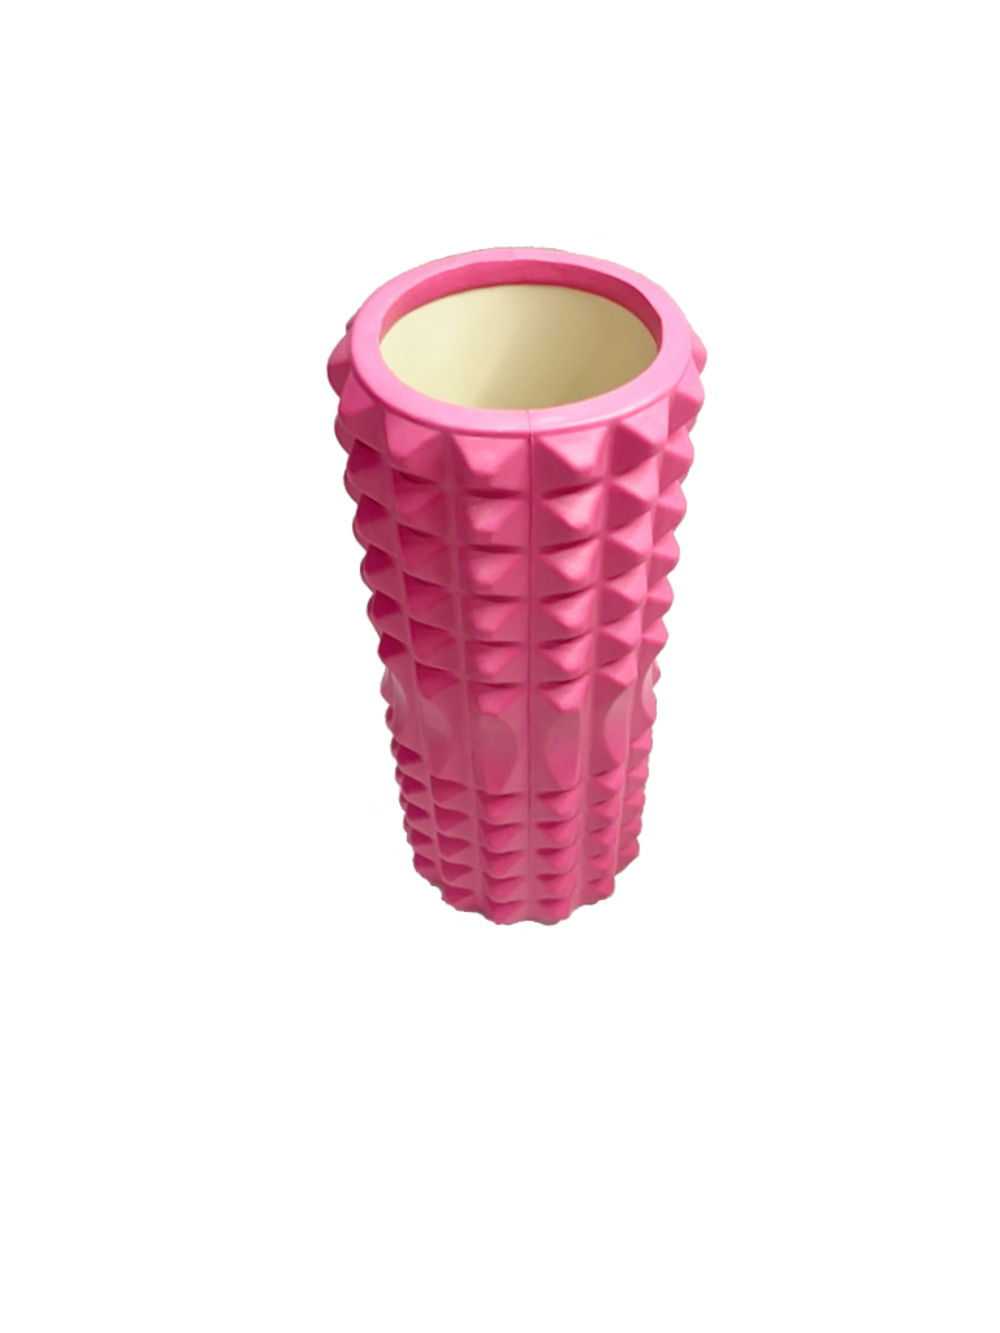 Ролик массажный для йоги MARK19 Yoga Semicircle 33x14 см розовый